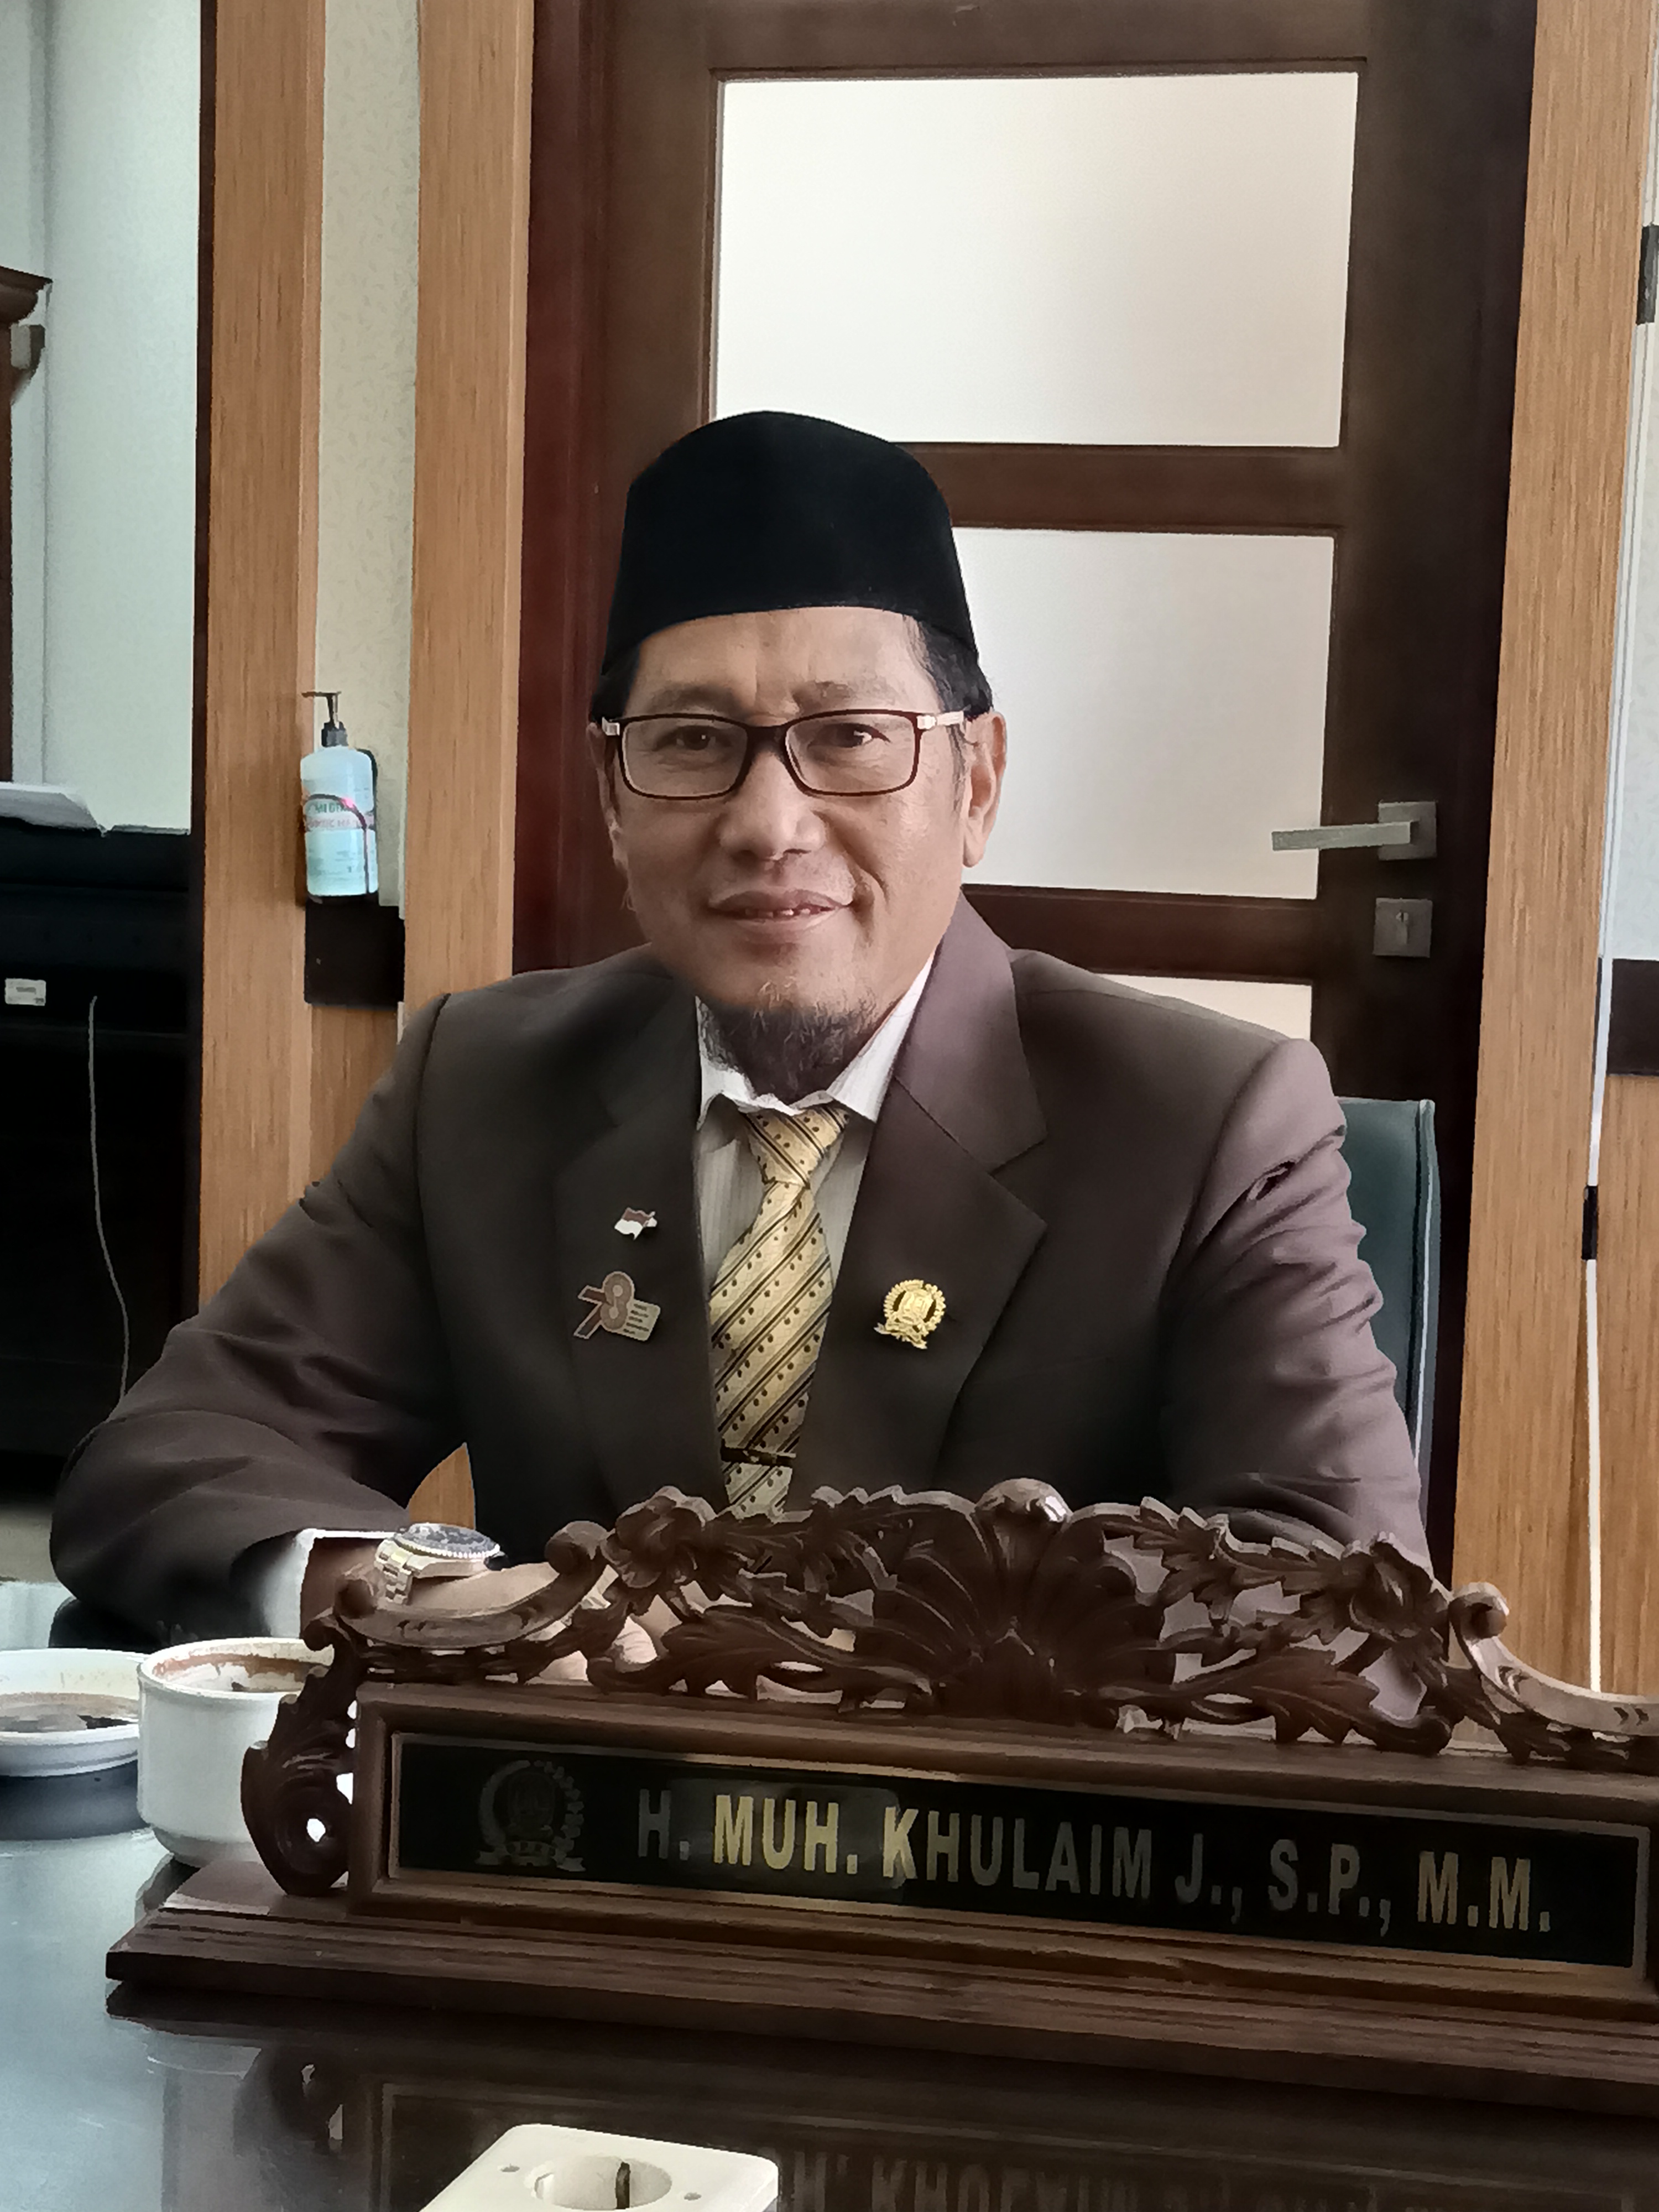 Anggota komisi B DPRD provinsi Jatim H. Muh. Khulaim Junaidi SP, MM